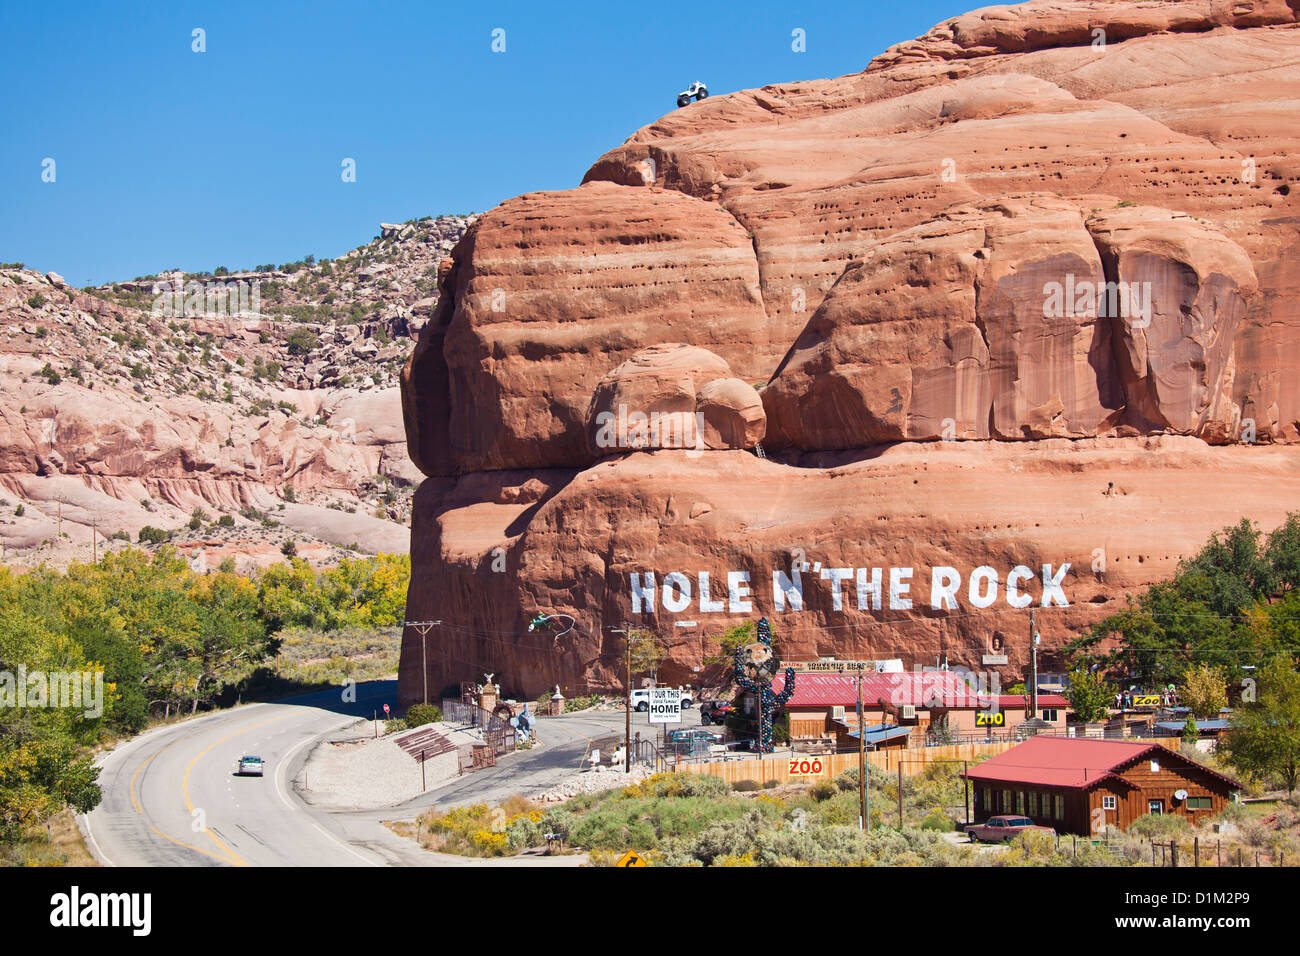 Foro n' il rock americana strada attrazione turistica souvenir shop al di fuori di Moab Utah Stati Uniti d'America USA US Foto Stock